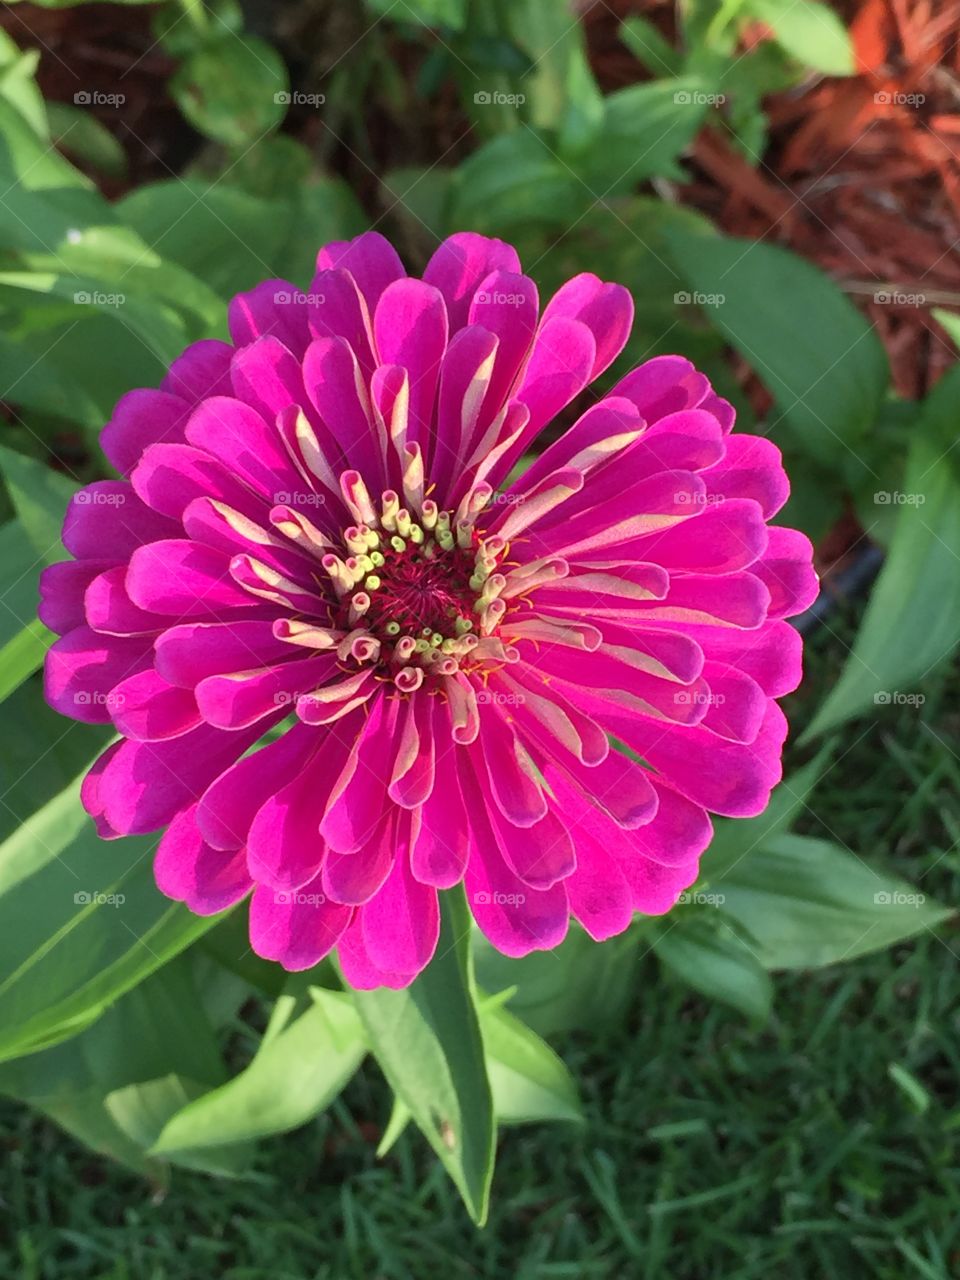   Beautiful flower in my garden 